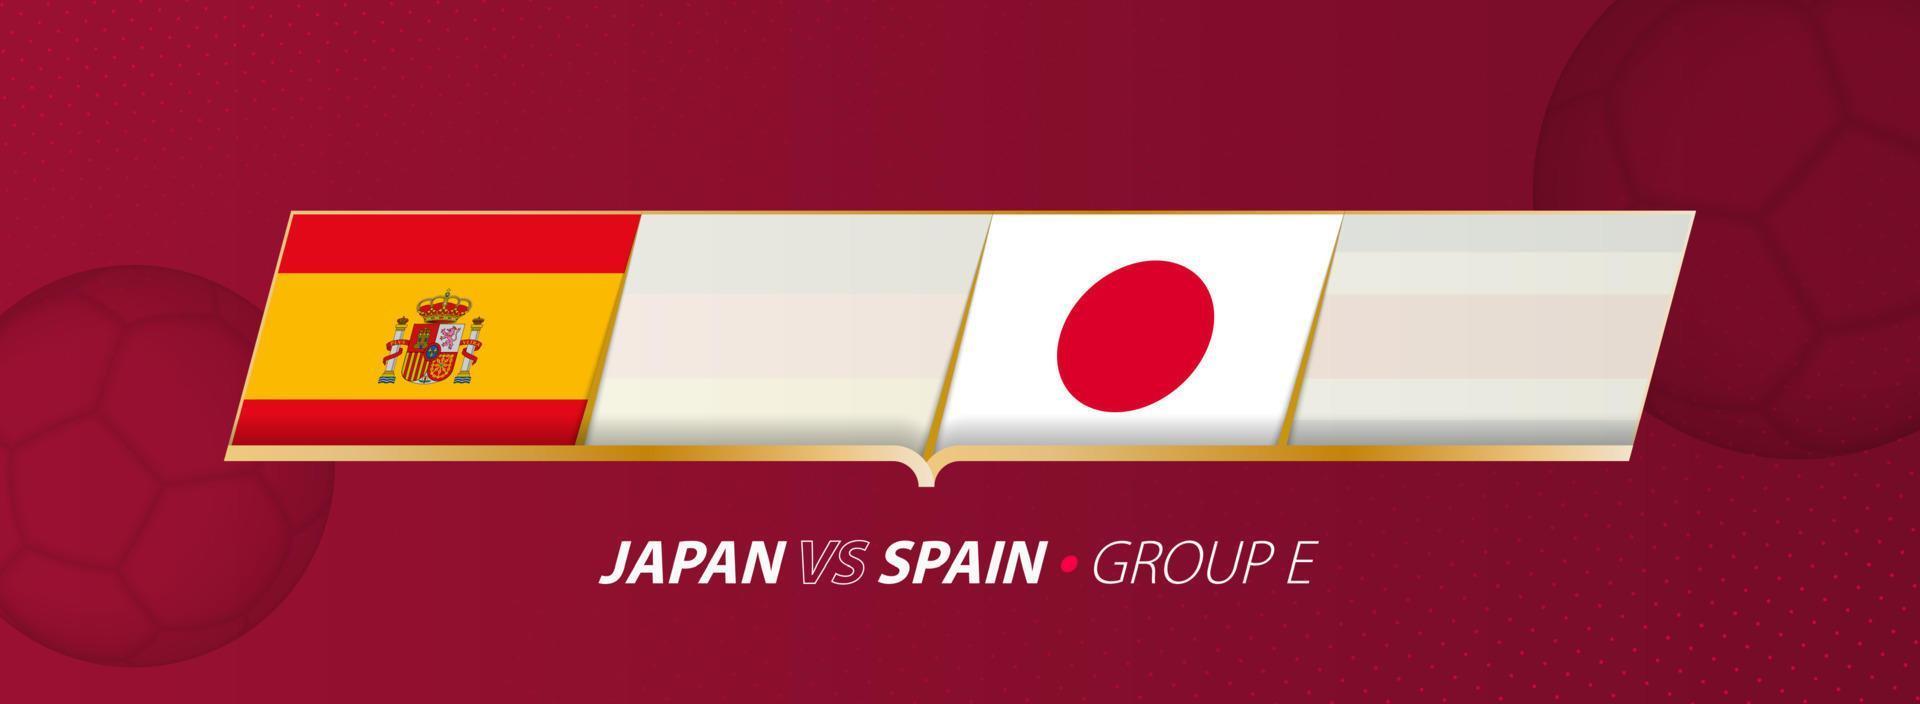 japan - Spanien fotboll match illustration i grupp a. vektor